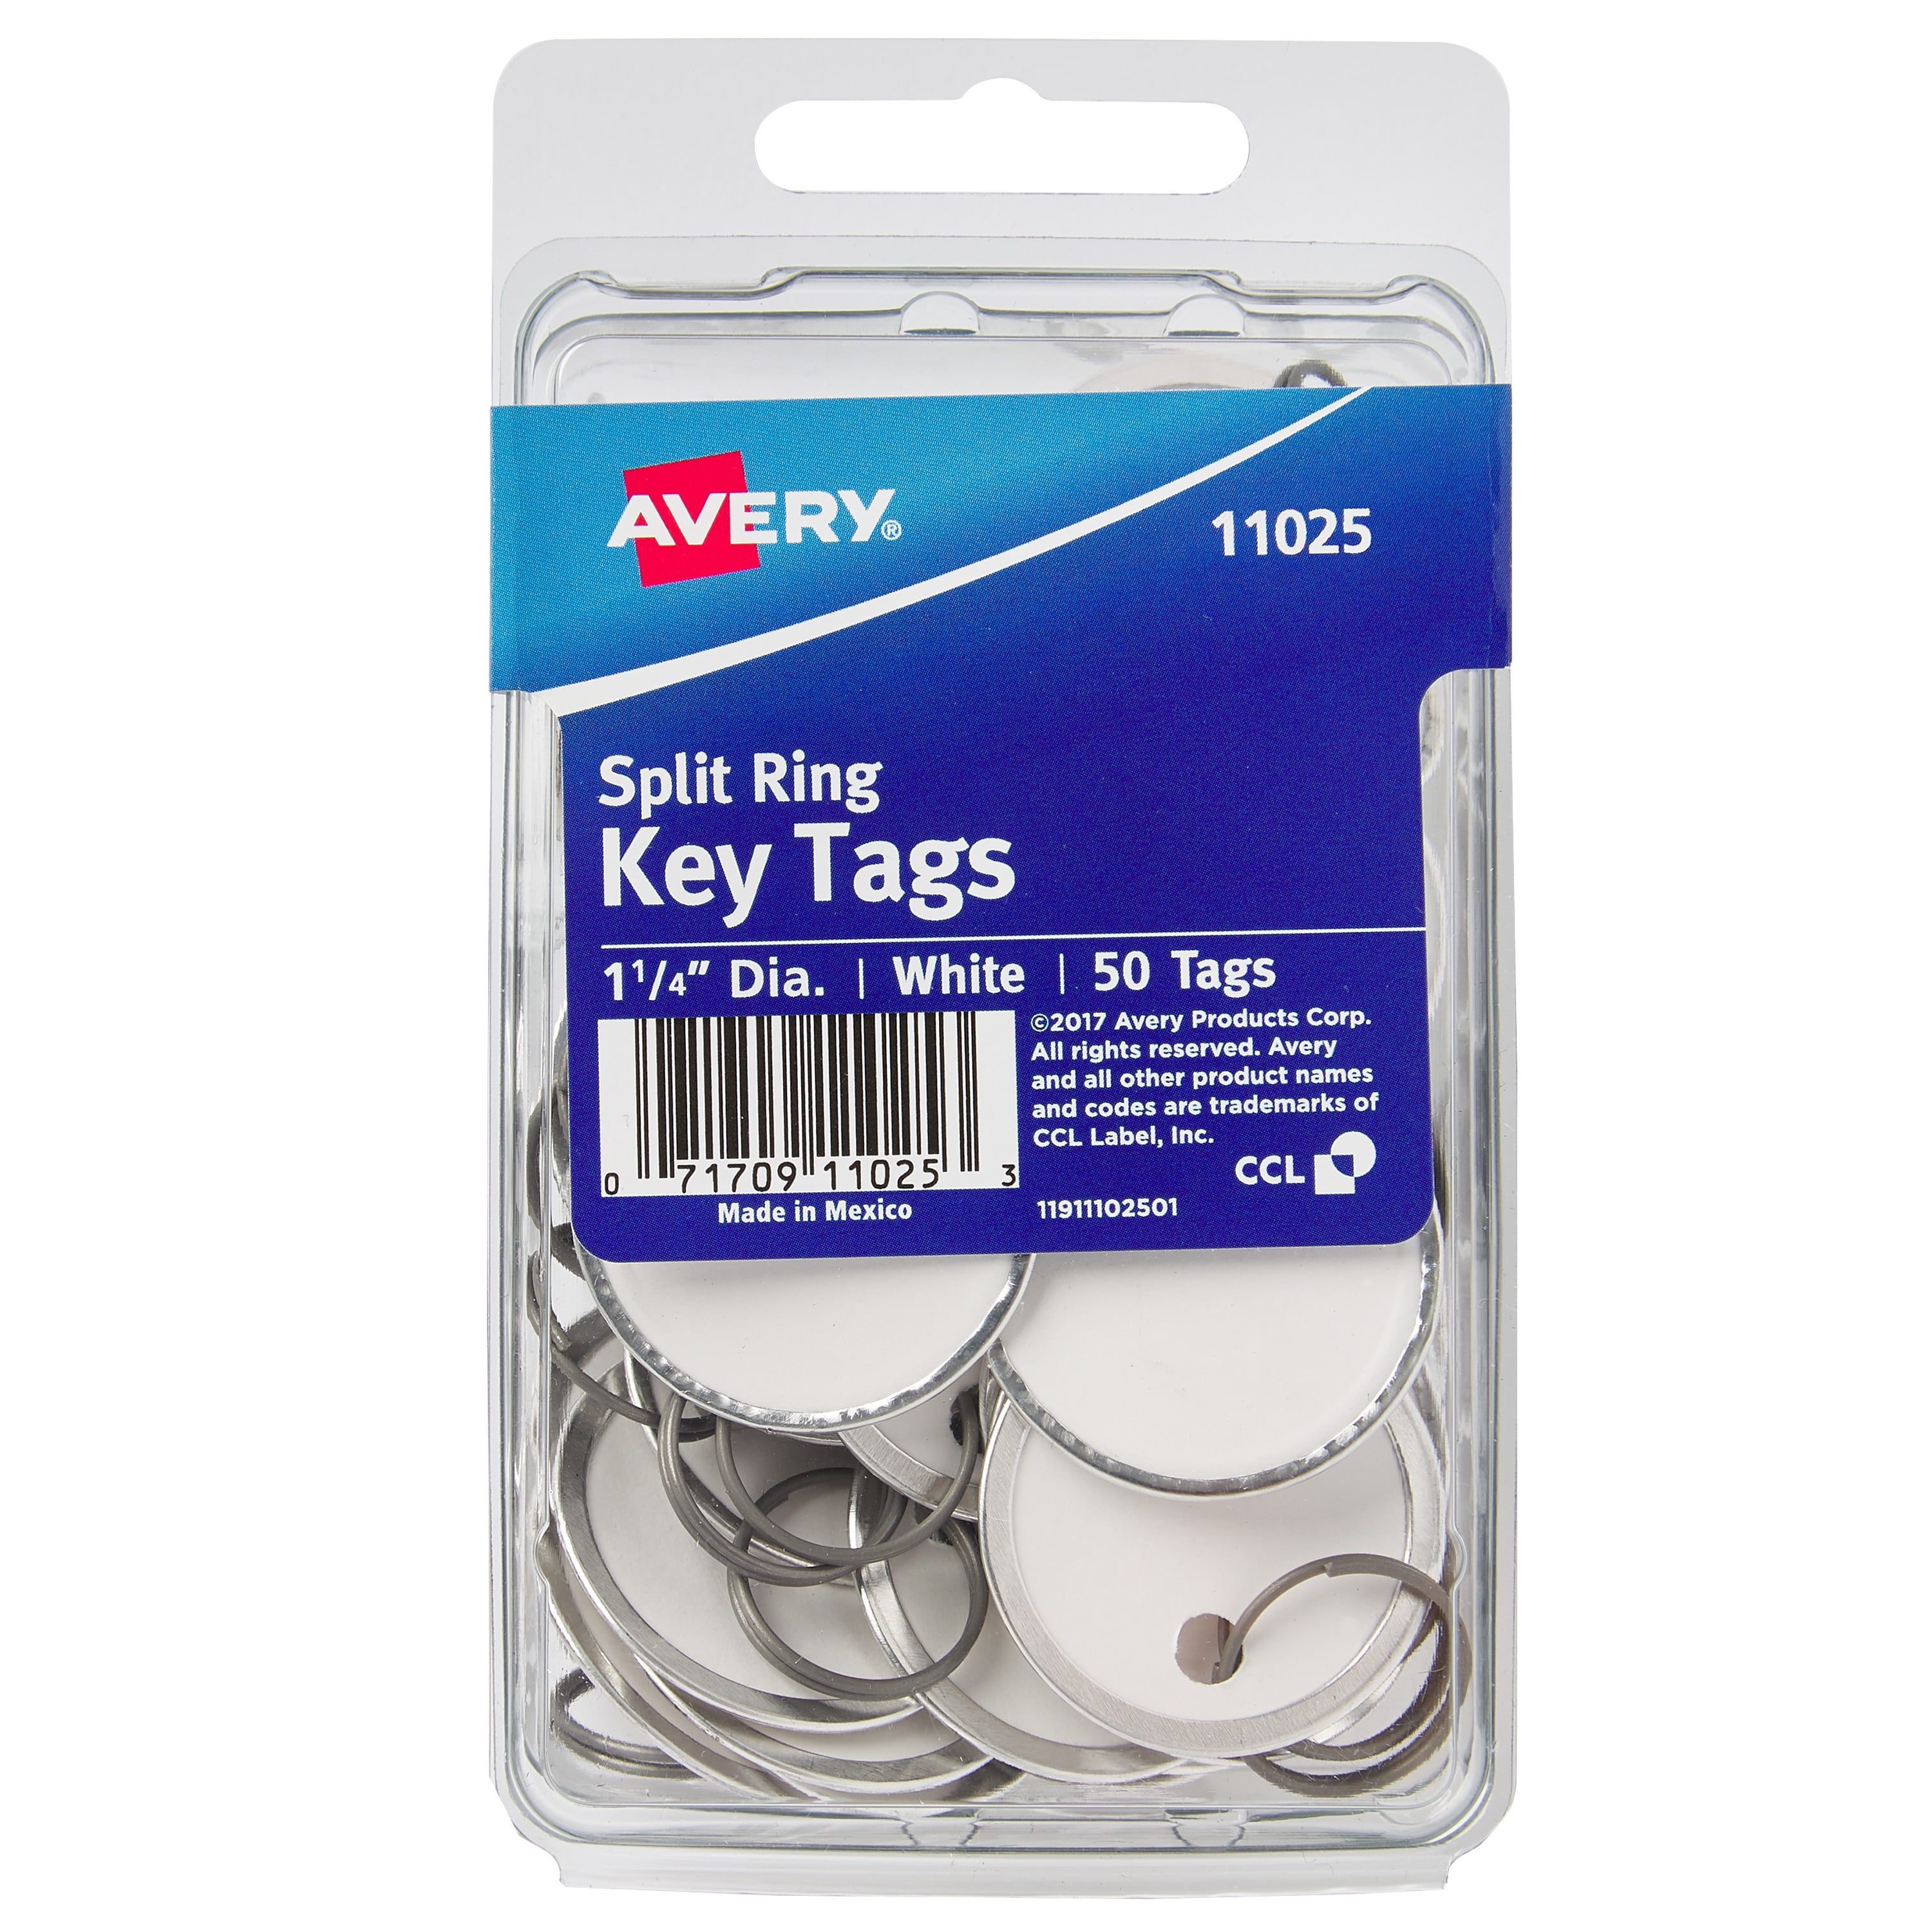 Avery 1-1/4 Metal Rim Key Tags, Split Ring, White, 50 Tags (11025) 